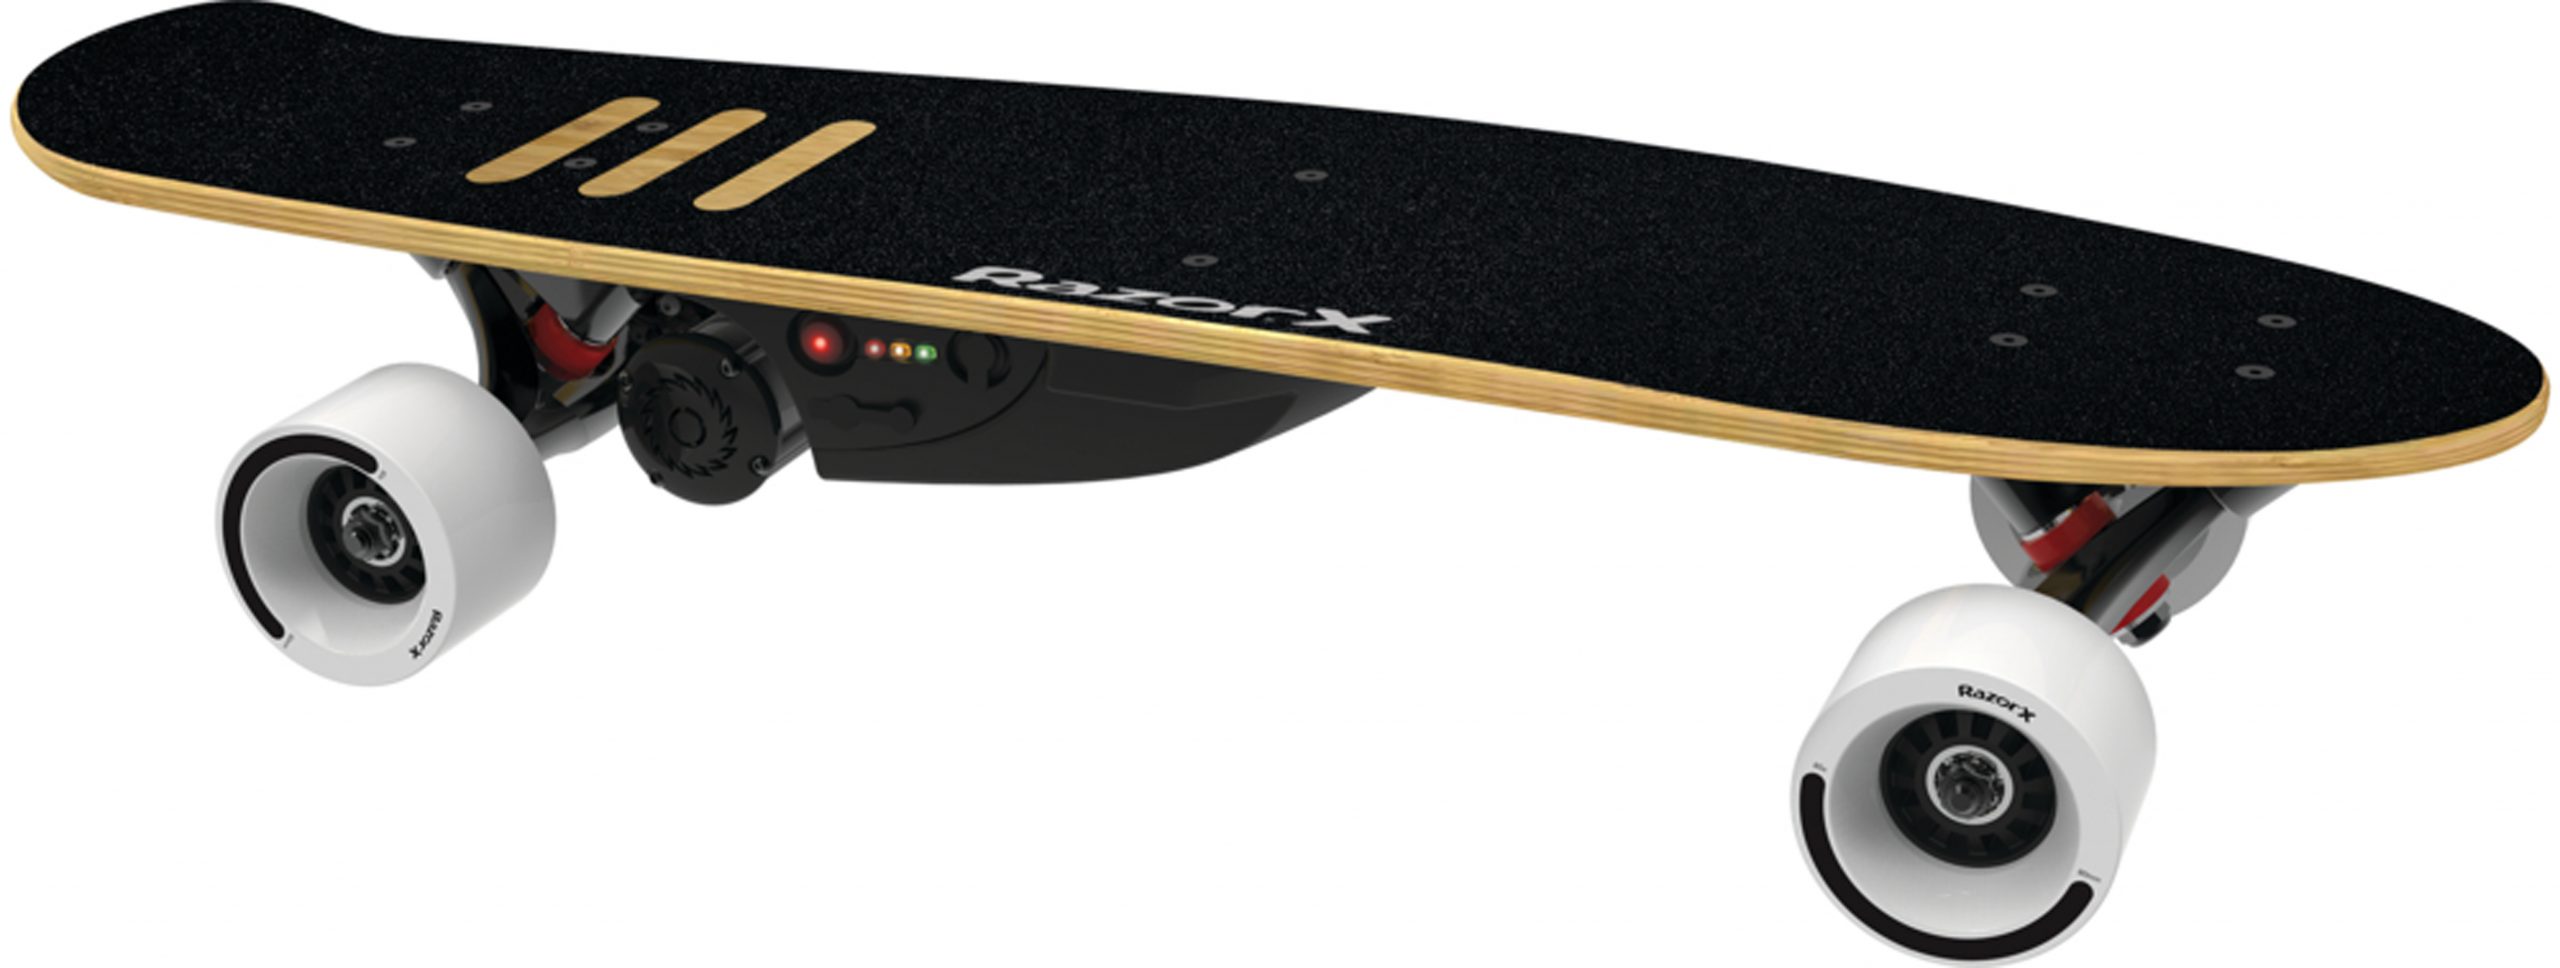 RazorX Electric Skateboards – Cruiser